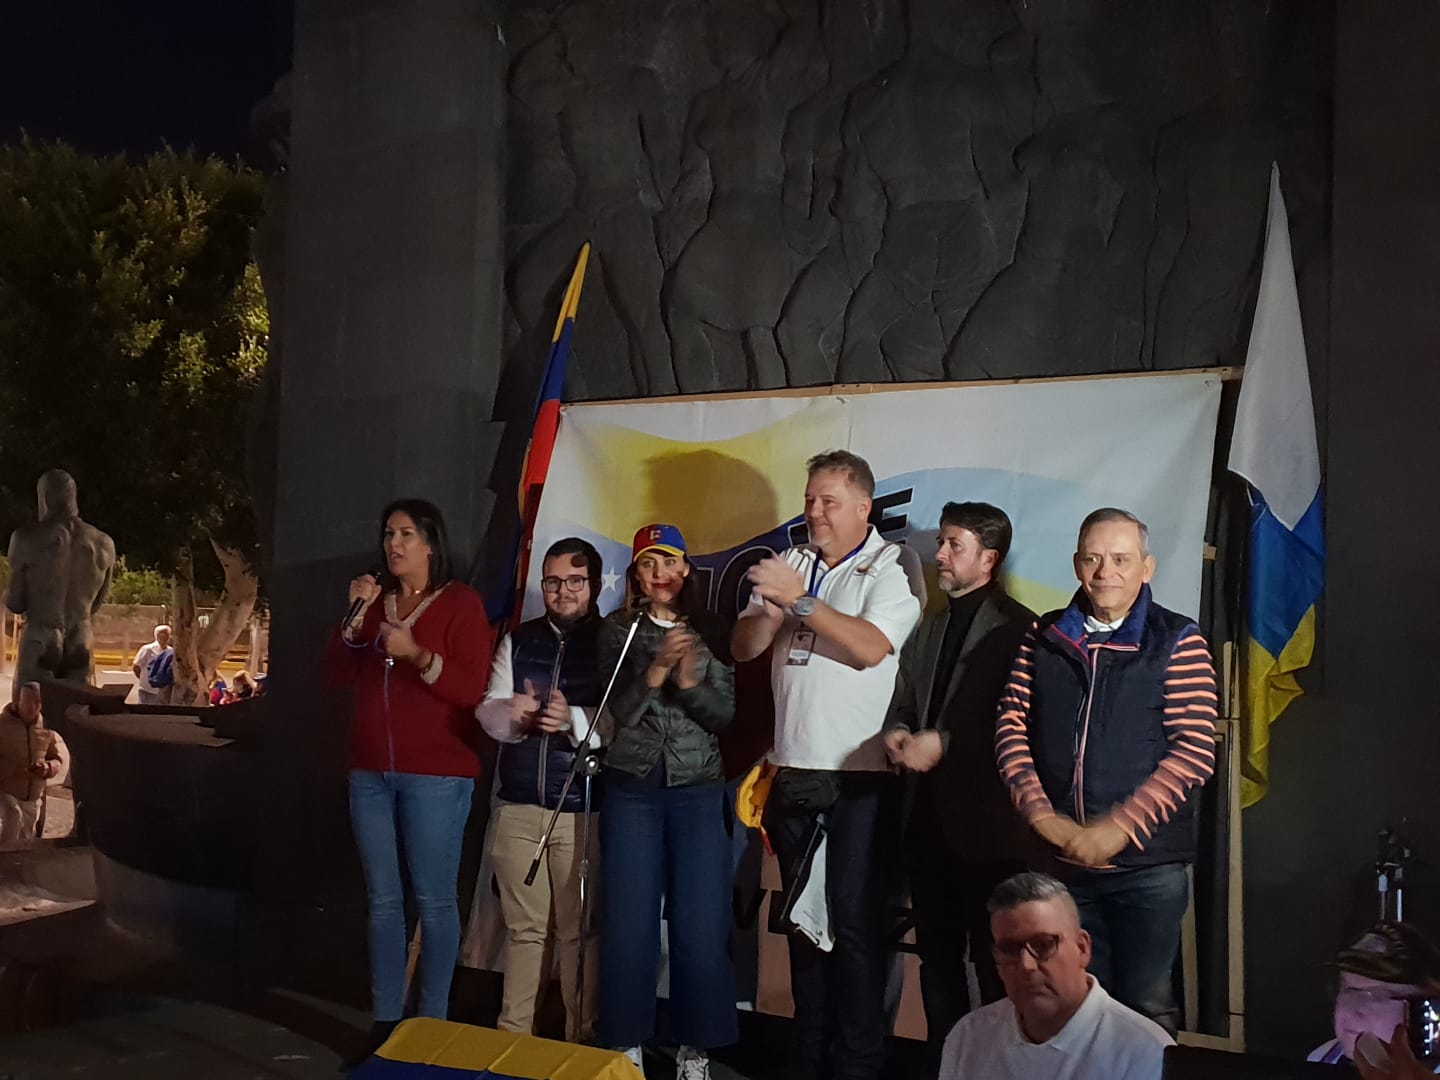 Venezolanos en Tenerife se unieron para apoyar en envío de ayuda humanitaria a Venezuela (Fotos)